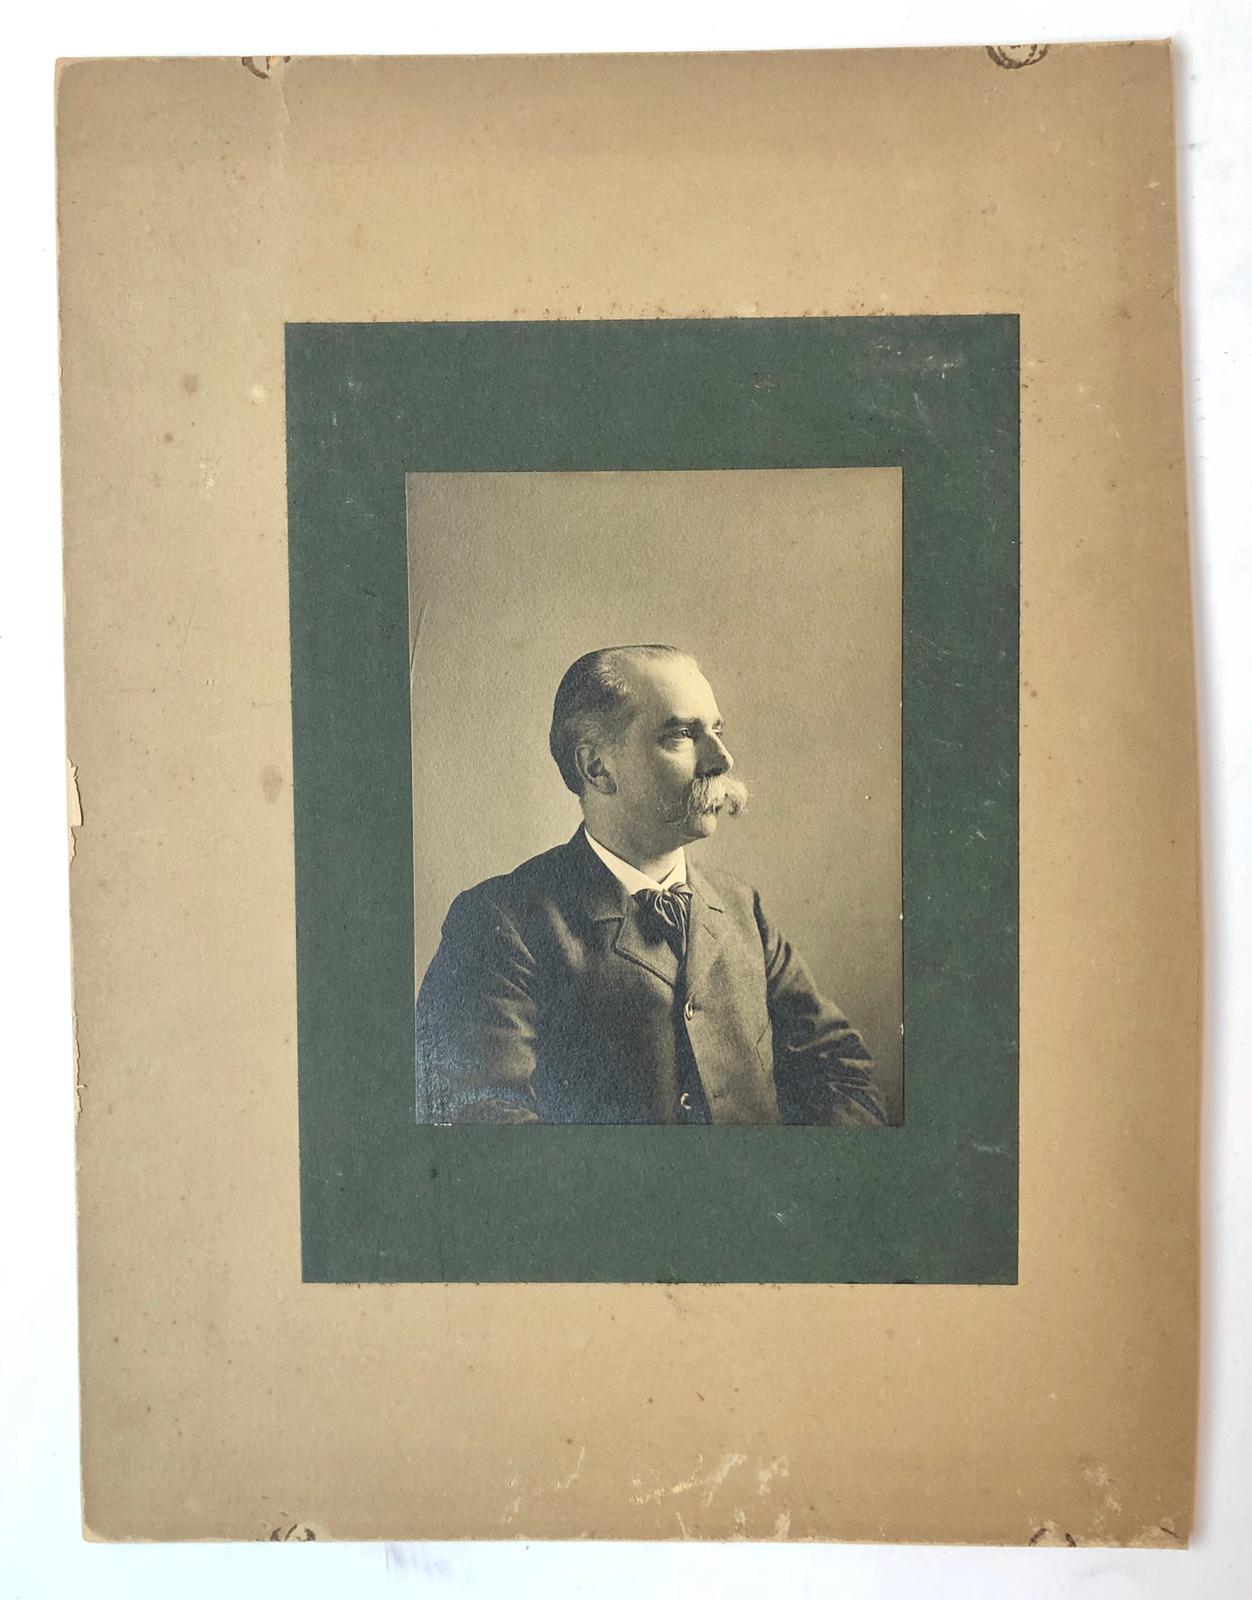 [Photography, Portrait photo, Rozenburg, The Hague, 1913] Portretfoto 13x18 cm. van S. Schellink, d.d. 16-6-1913, afkomstig uit het bezit van dr. E.C.J. Mohr, hoogleraar tropische economie te Utrecht.